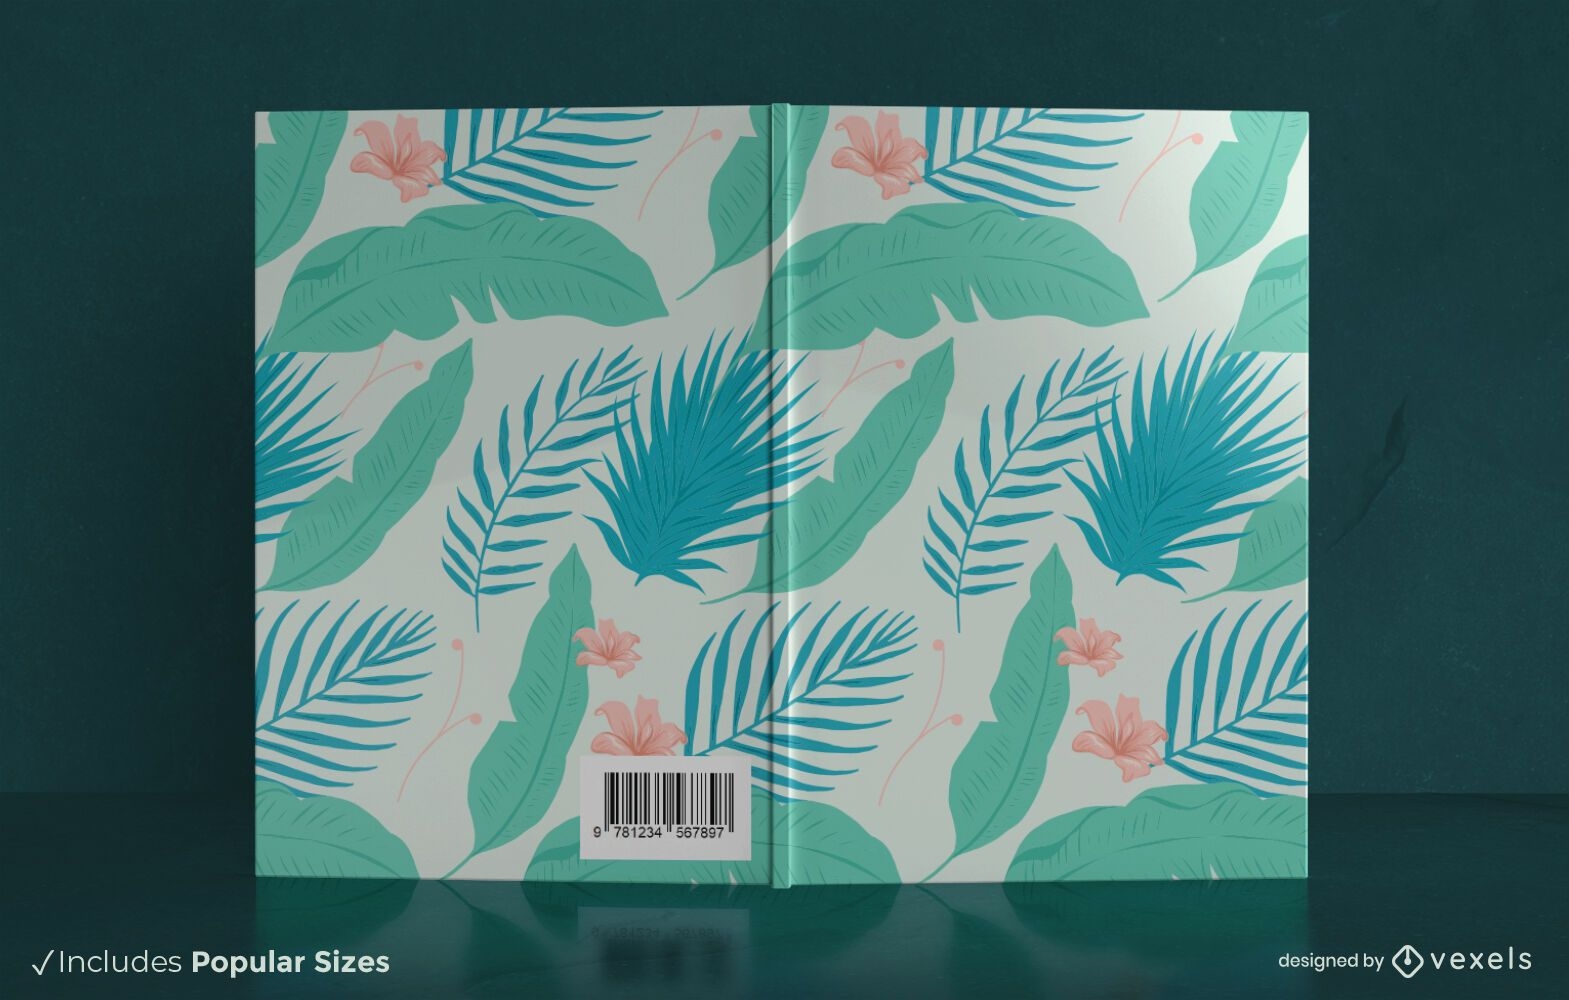 Design des Naturbuchcovers